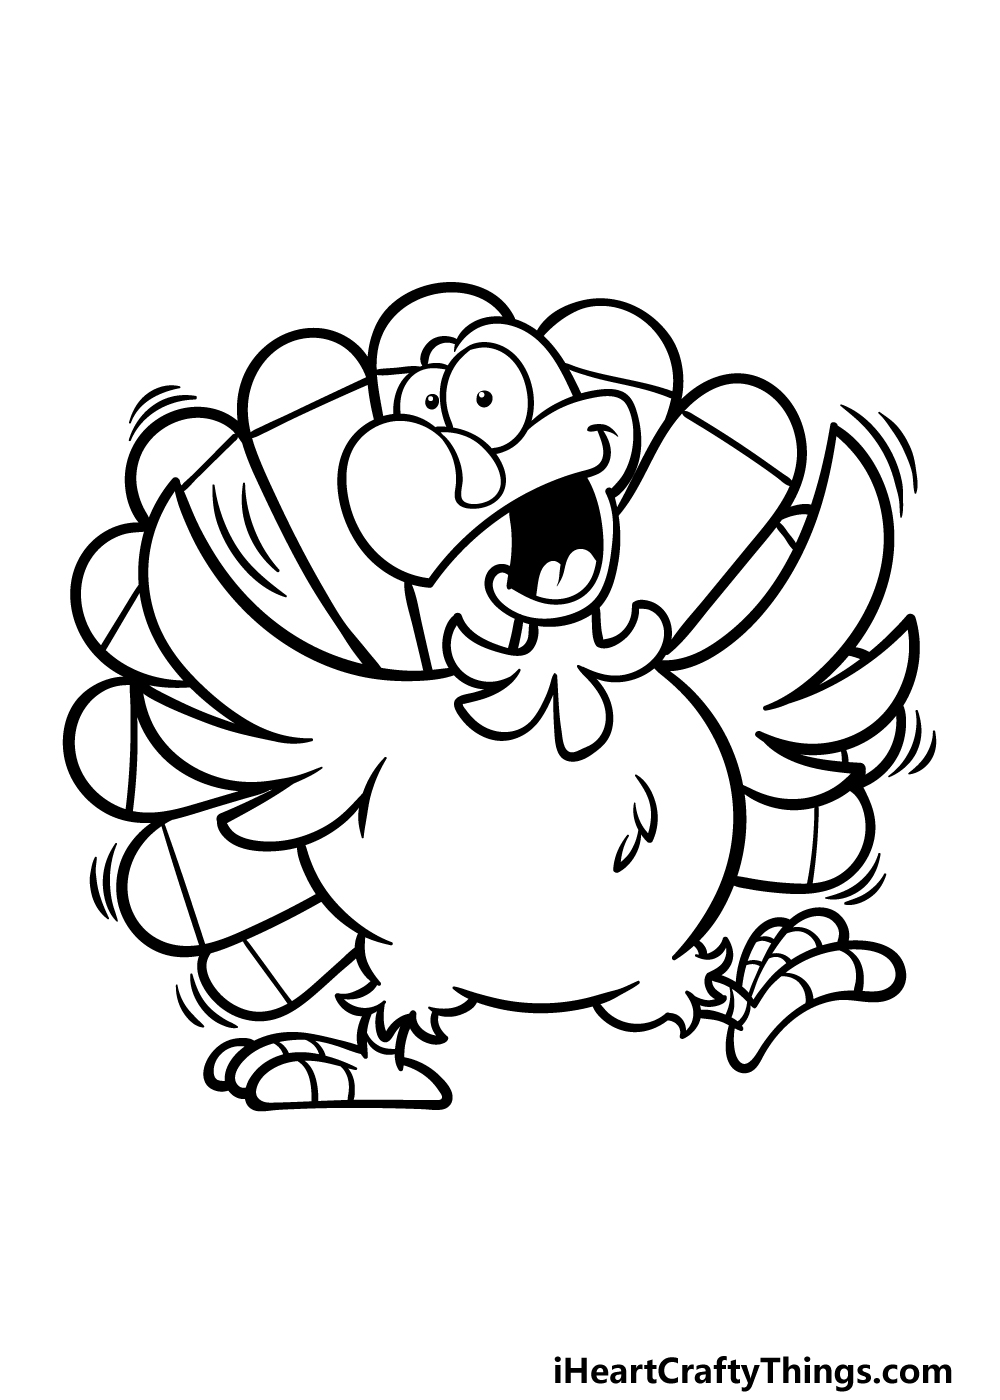 how to draw a cartoon turkey step 5